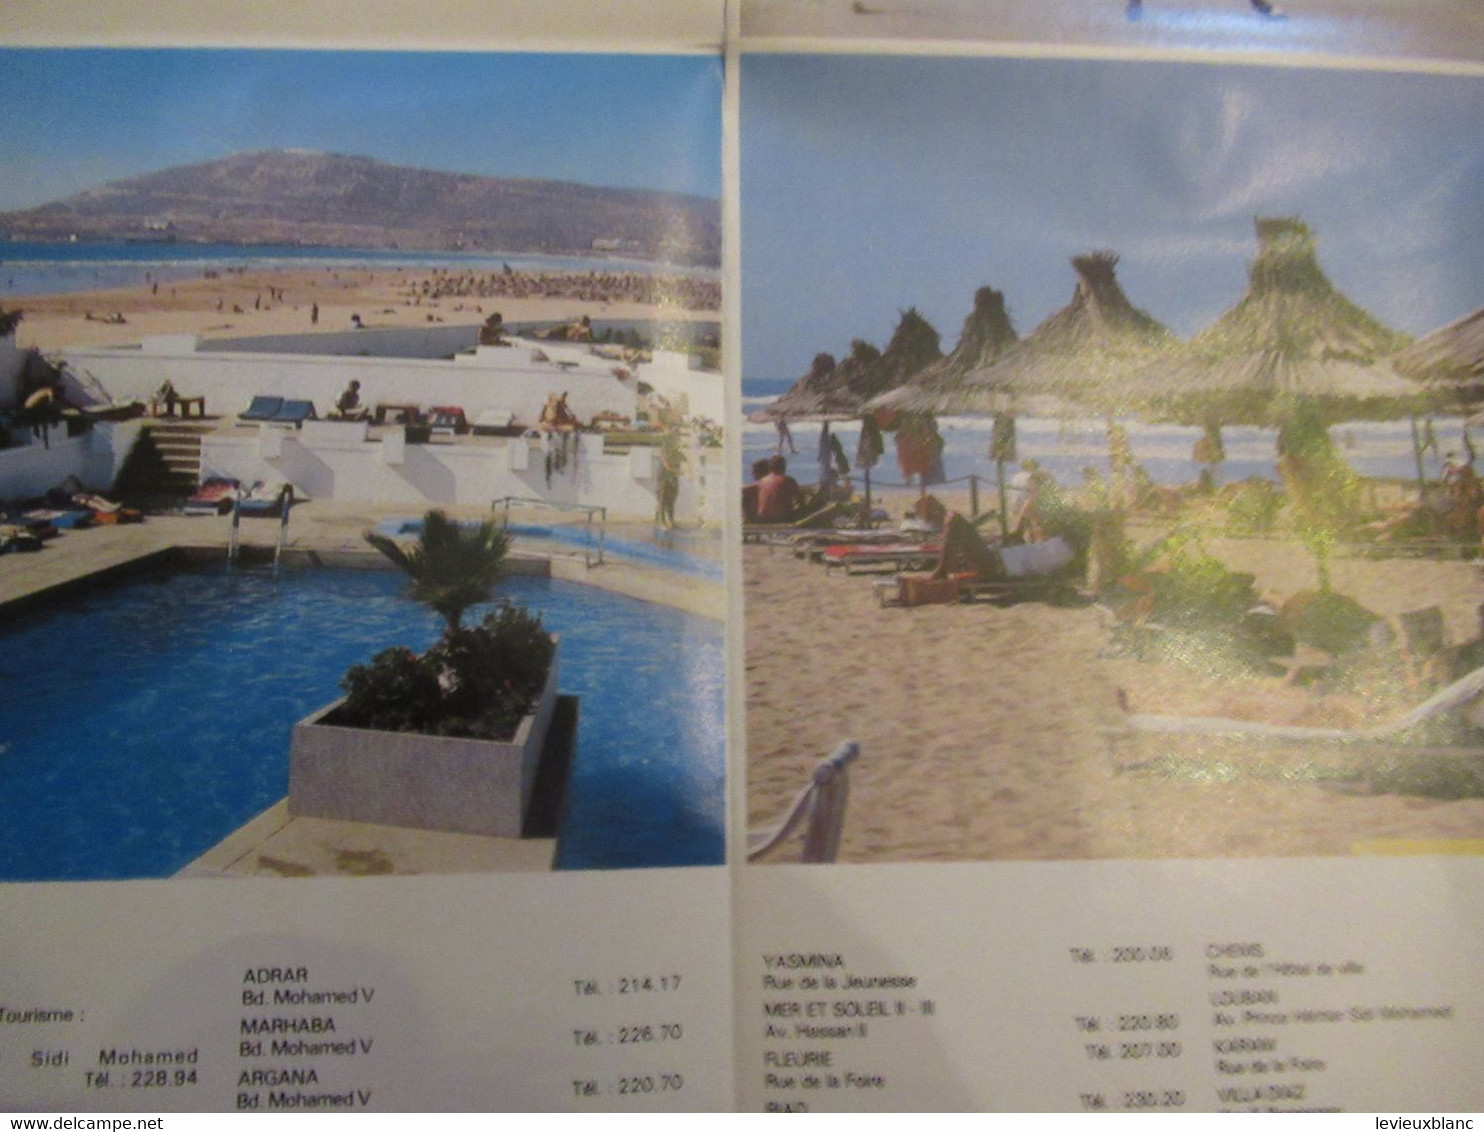 Document ancien/MAROC/AGADIR /Carte de la ville et présentation illustrée/ Office  Marocain du Tourisme/1989   PGC465